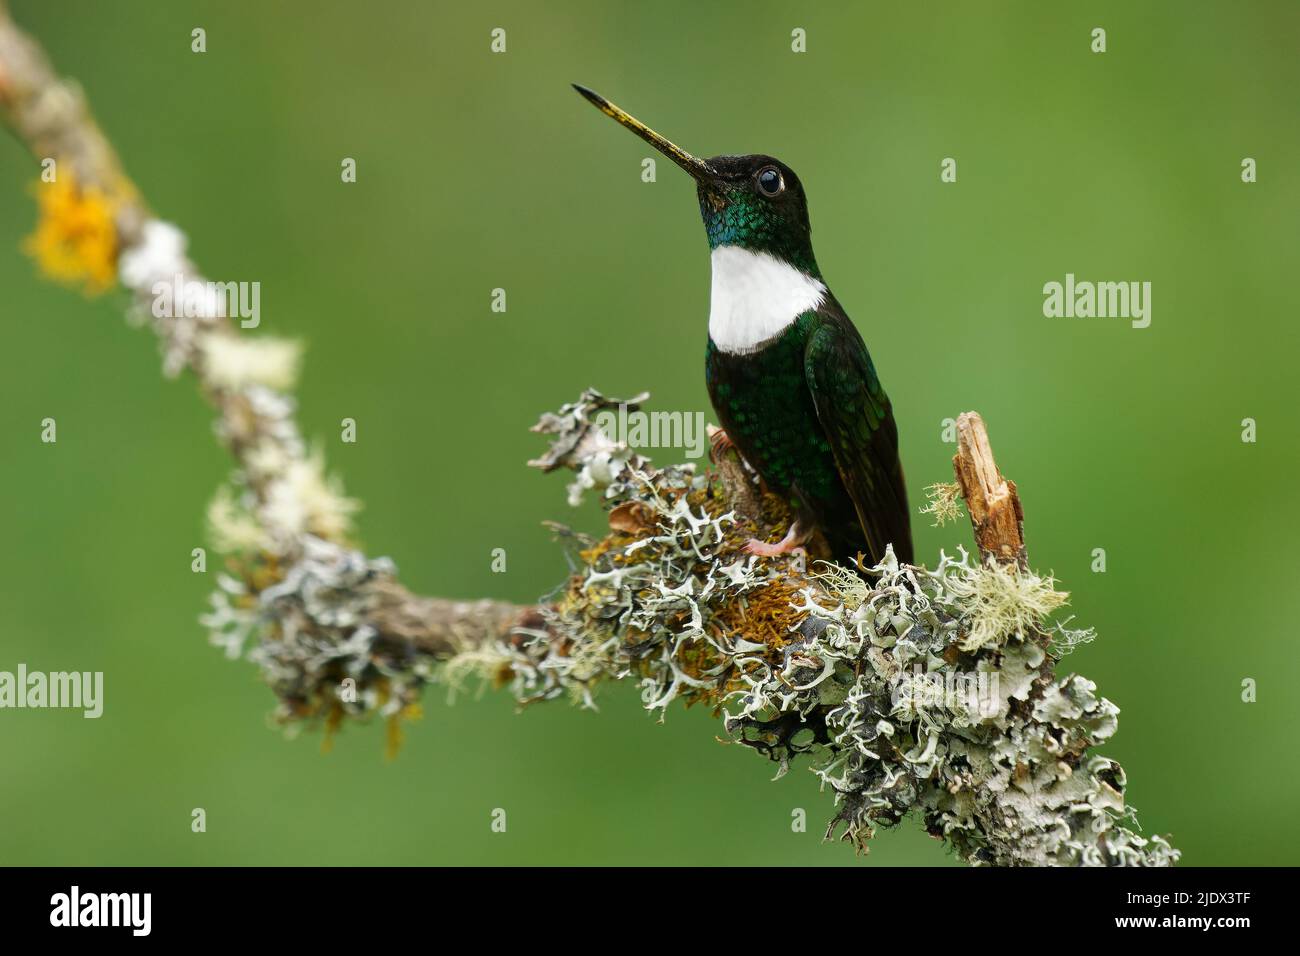 Colared Inca - Coeligena torquata colibrì rinvenuto in foreste umide andine in Venezuela, Colombia, Ecuador, Perù e Bolivia, toppa bianca, flo Foto Stock